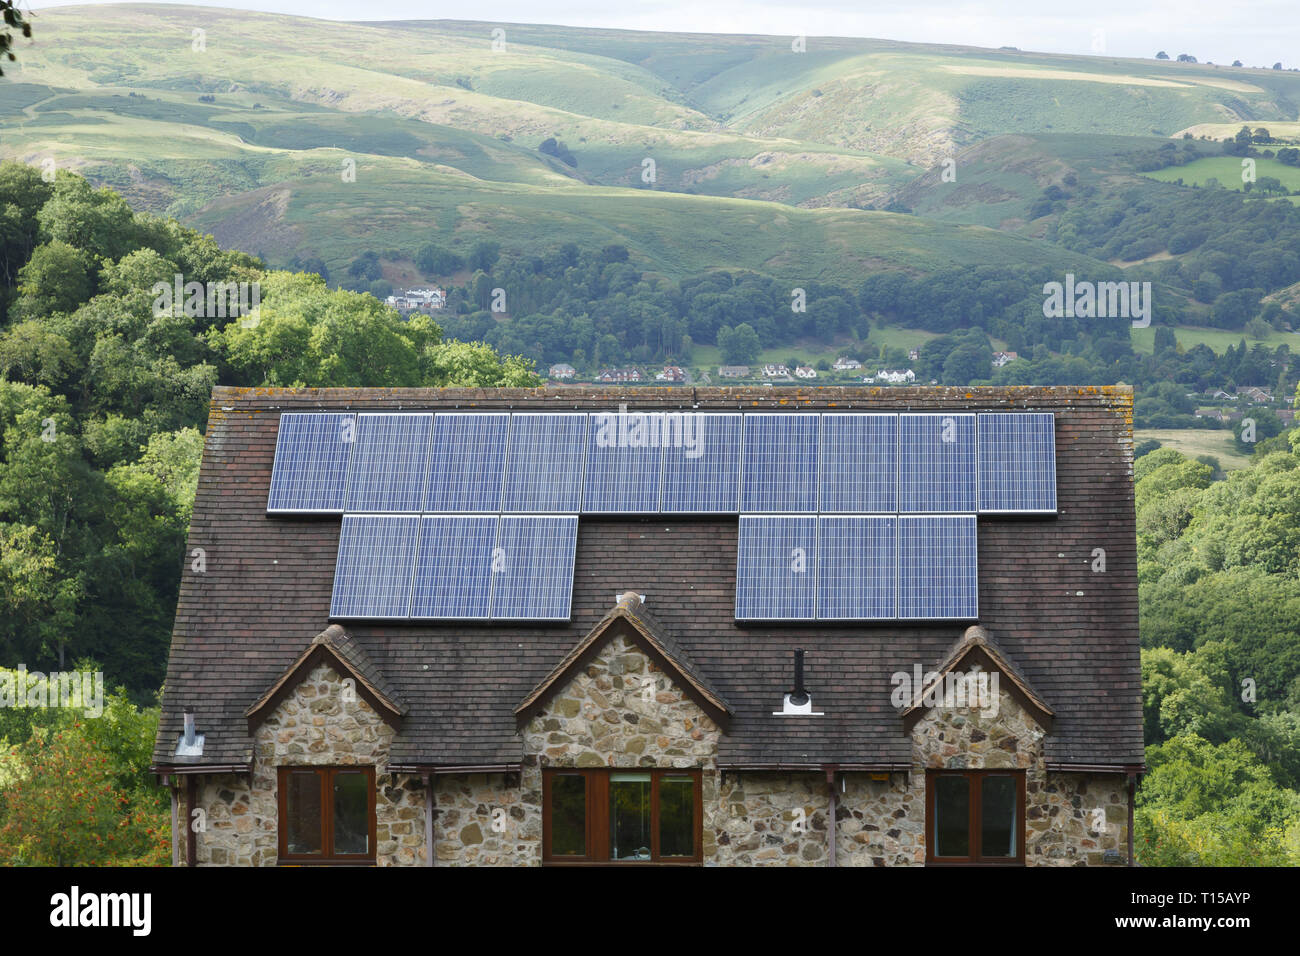 Shropshire, Reino Unido - 10 de septiembre de 2013. Los paneles solares instalados en el techo de una casa en la Inglaterra rural. Foto de stock